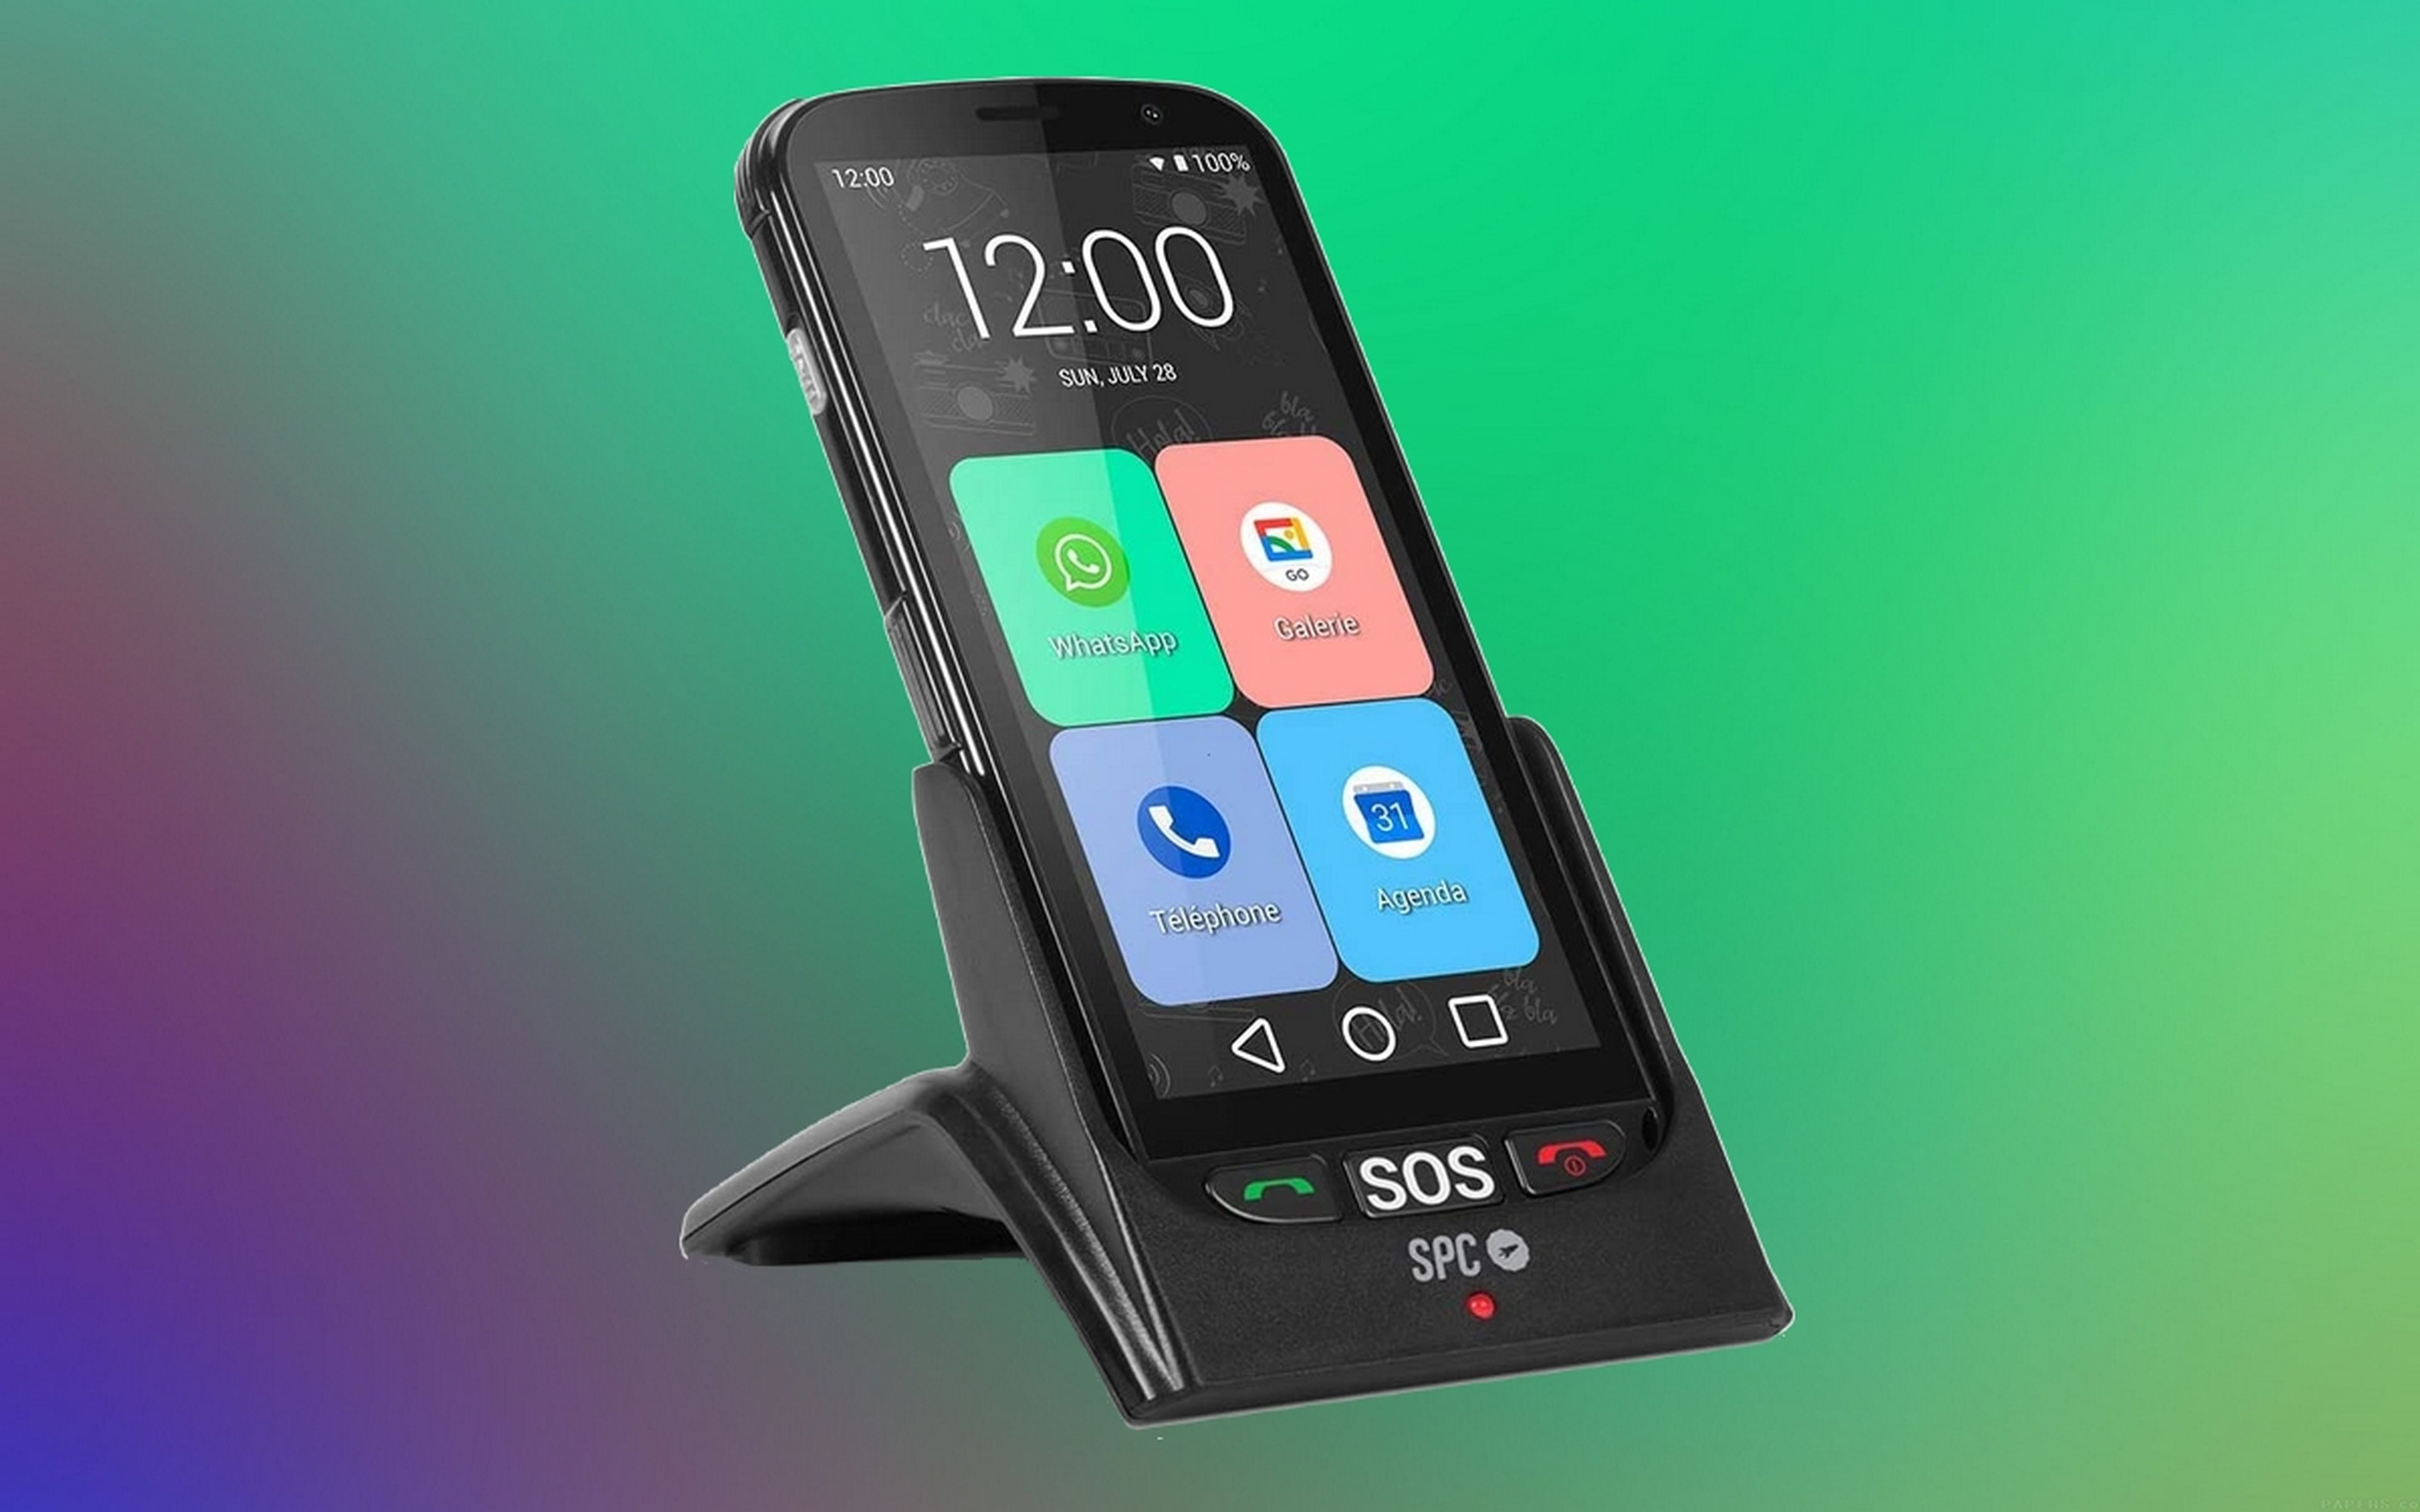 SPC Telefono Movil Boton SOS - de Tapa para Personas Mayores - Boton de  Emergencias - Botones y Teclas